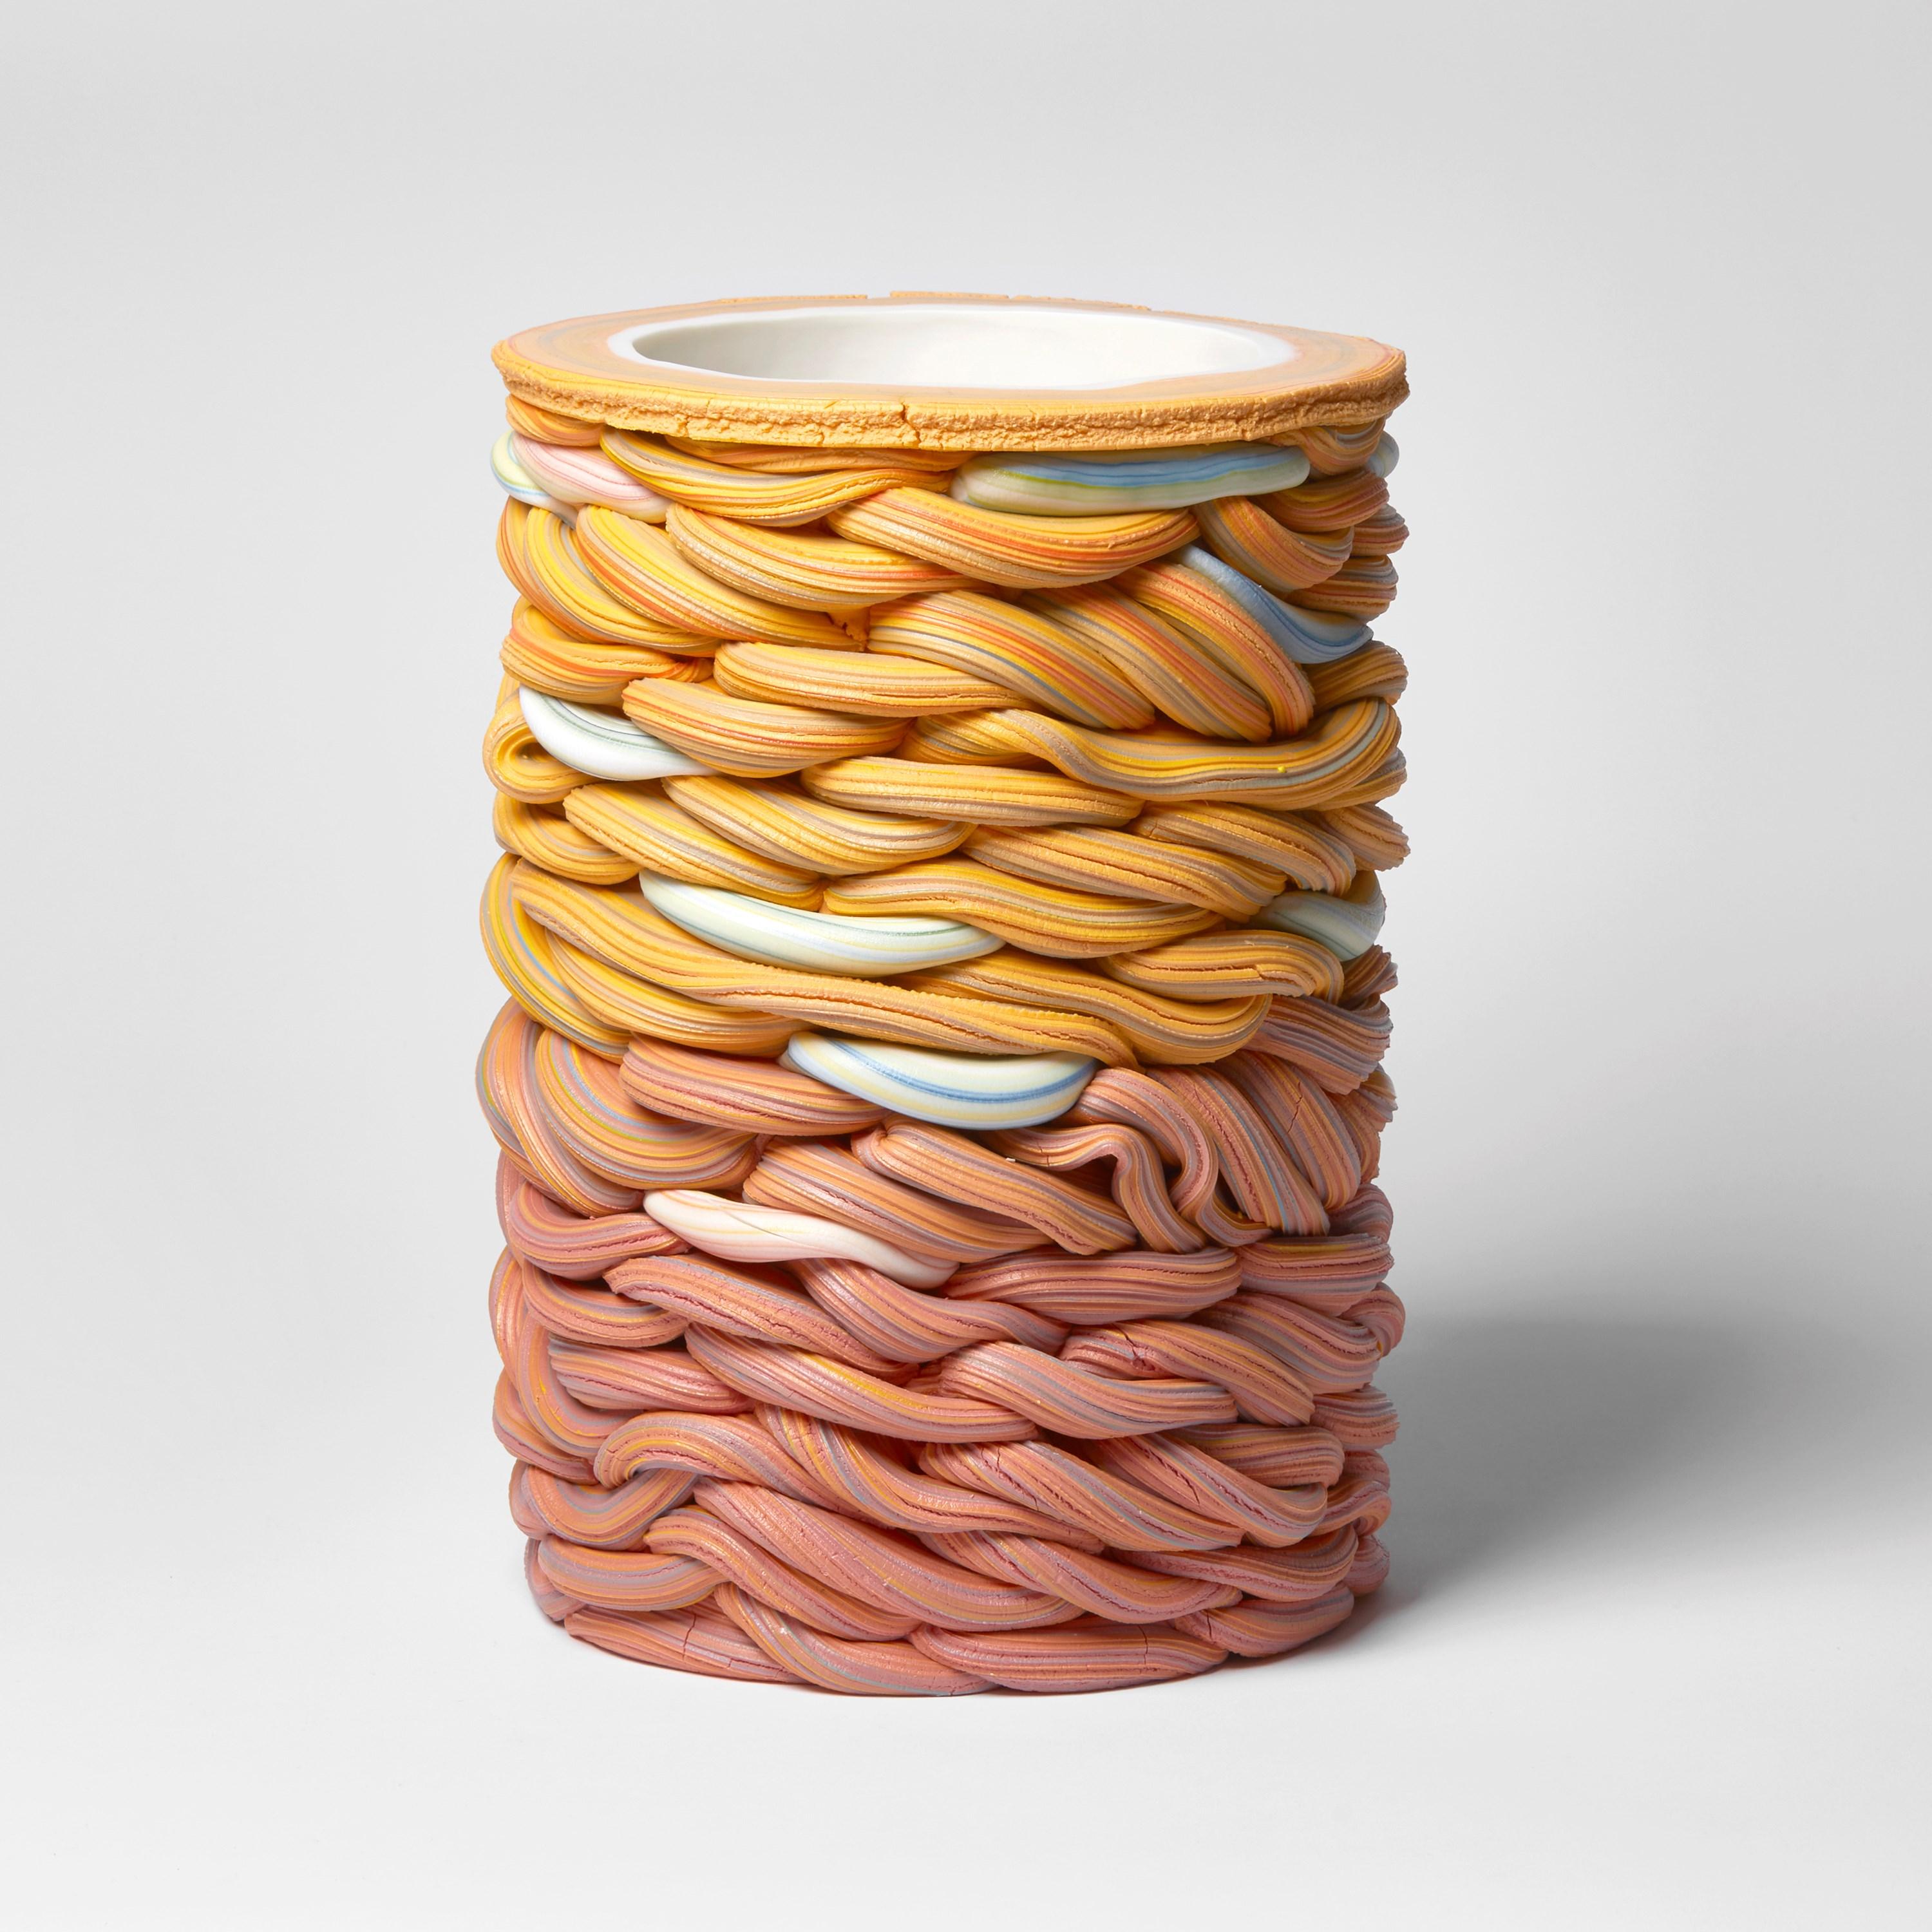 Striped Foldes II est une sculpture unique de l'artiste britannique Steven Edwards, créée à partir de porcelaine parianne blanche et colorée.

Steven Edwards est un artiste céramiste dont le travail explore le langage du Making Works à travers la